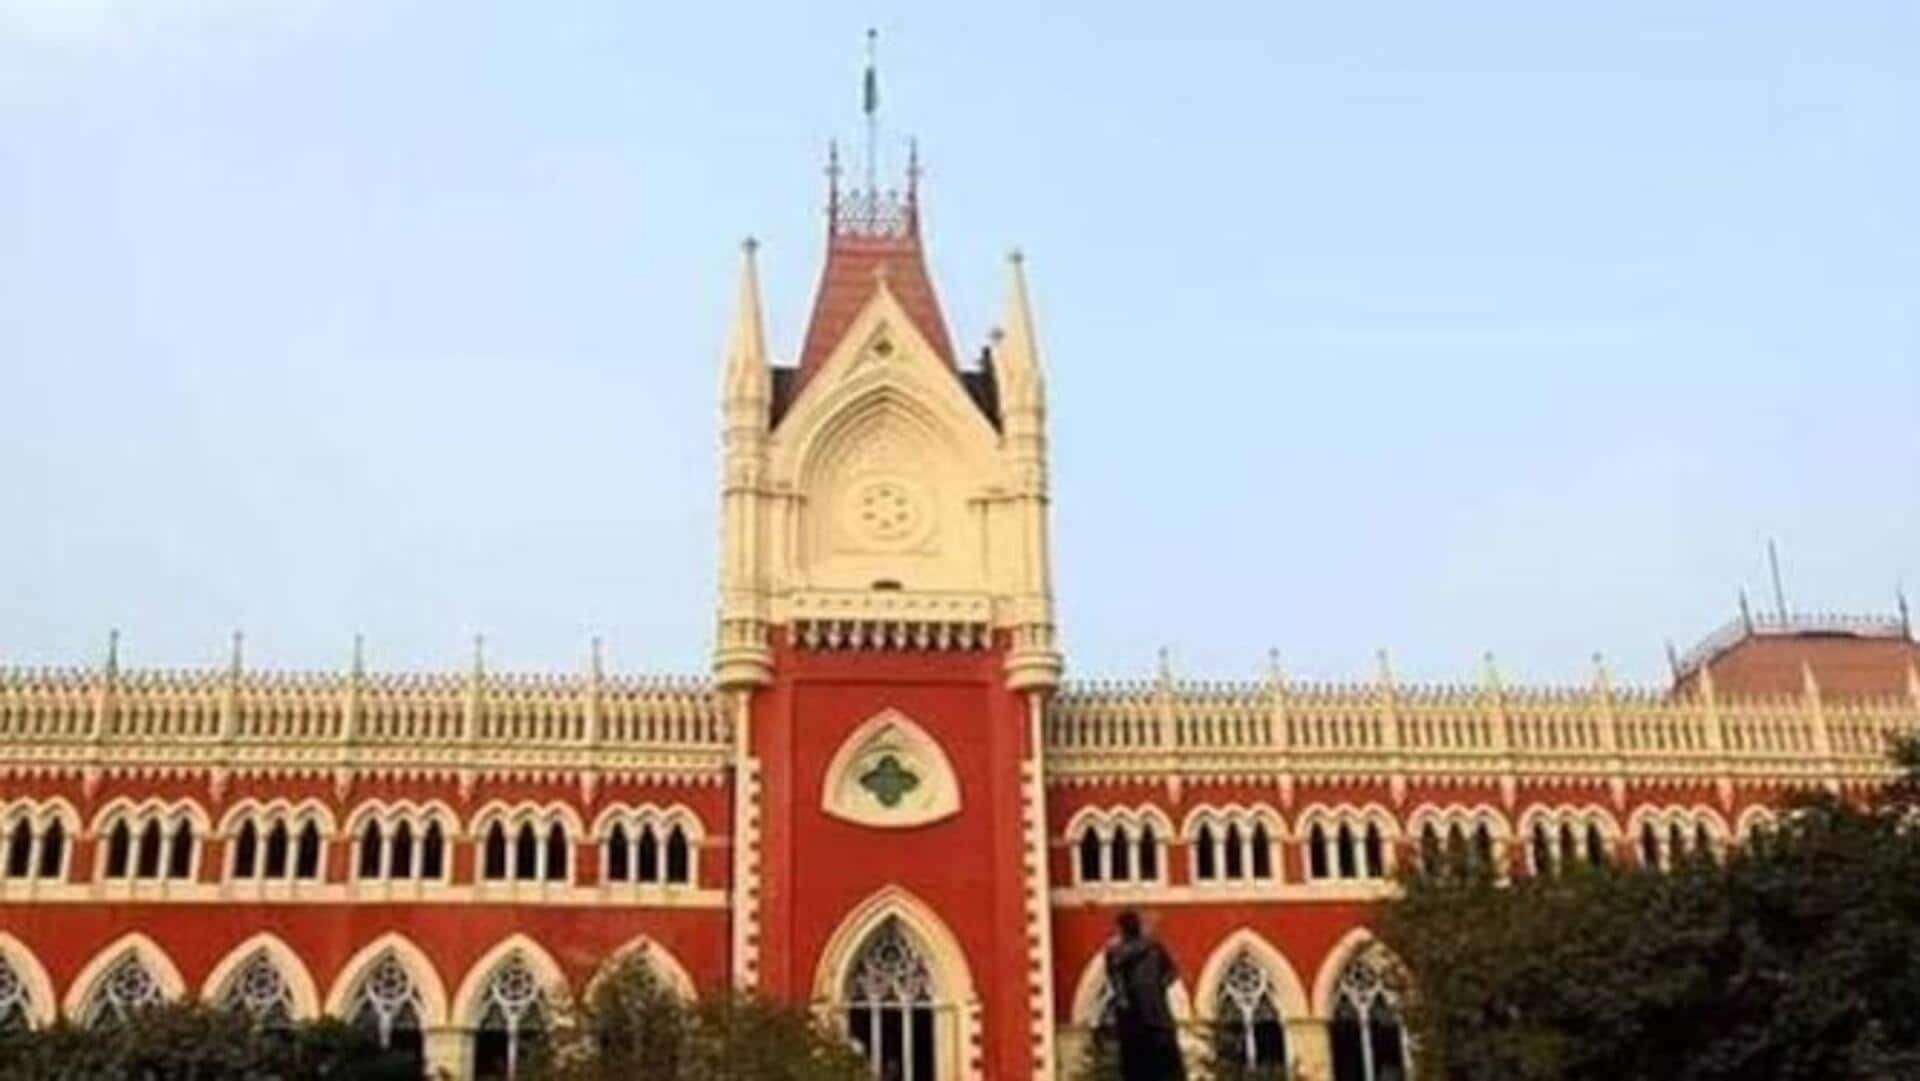 Teachers jobs-Calcutta High court: అక్రమంగా ఉద్యోగాలు పొందారు..డబ్బులు తిరిగి చెల్లించండి: కలకత్తా హైకోర్టు సంచలన తీర్పు